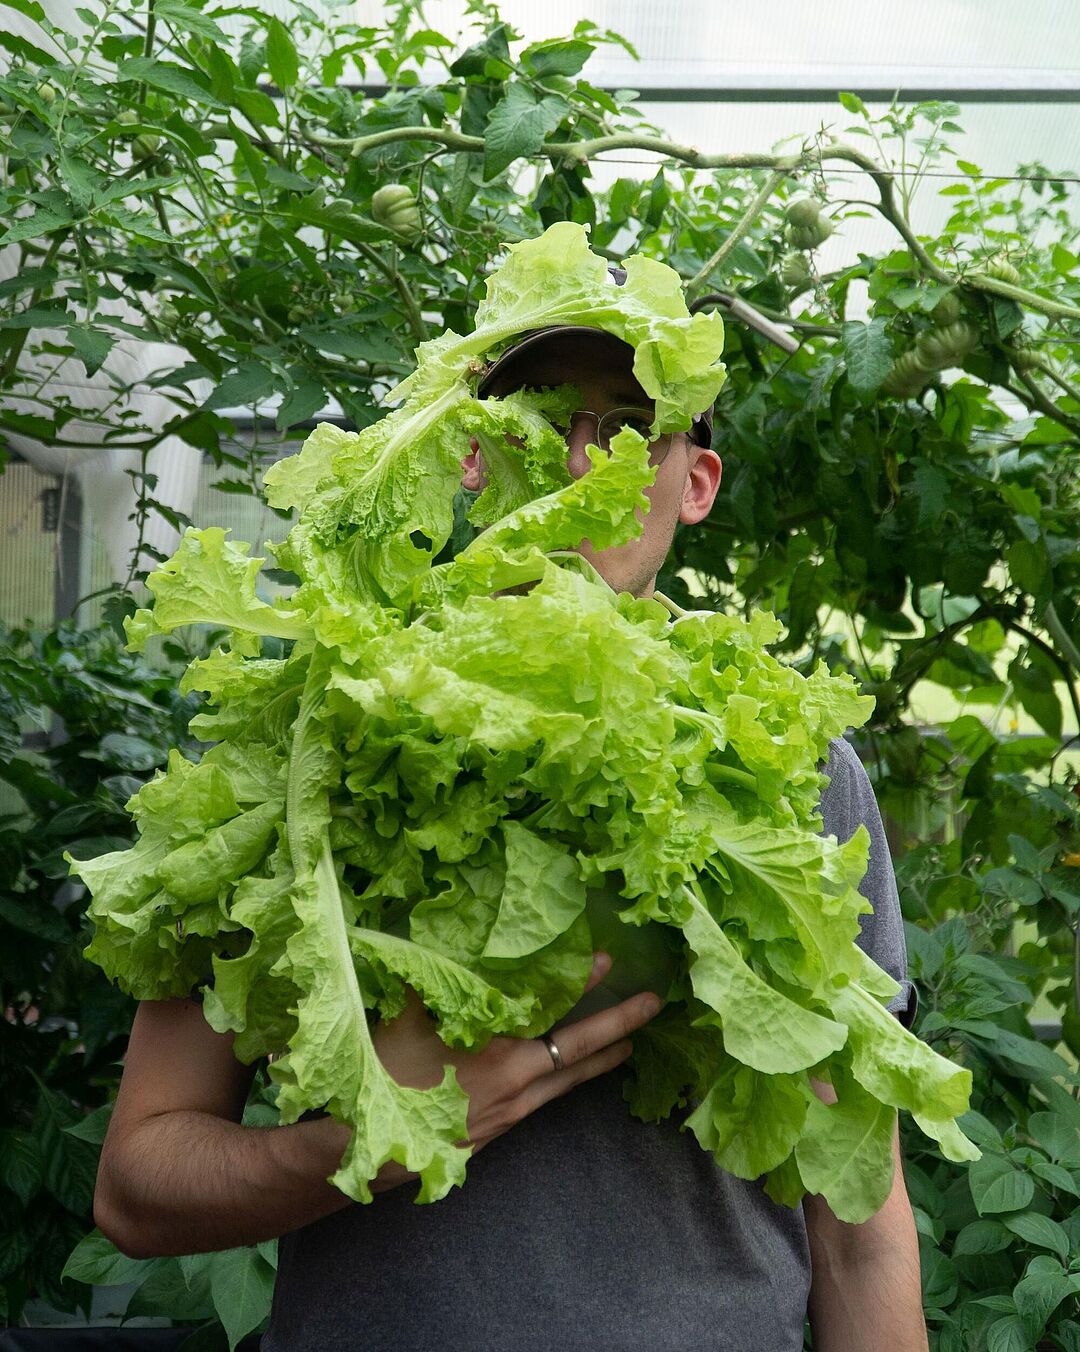 Ein Projektmitglied hält in einer Hand einen ca. 50cm (Durchmesser) großen Lollo Bianco Salat. Das Gesicht ist fast vollständig verdeckt. Im Hintergrund ca. 2m hohe Tomatenranken mit noch grünen Früchten.